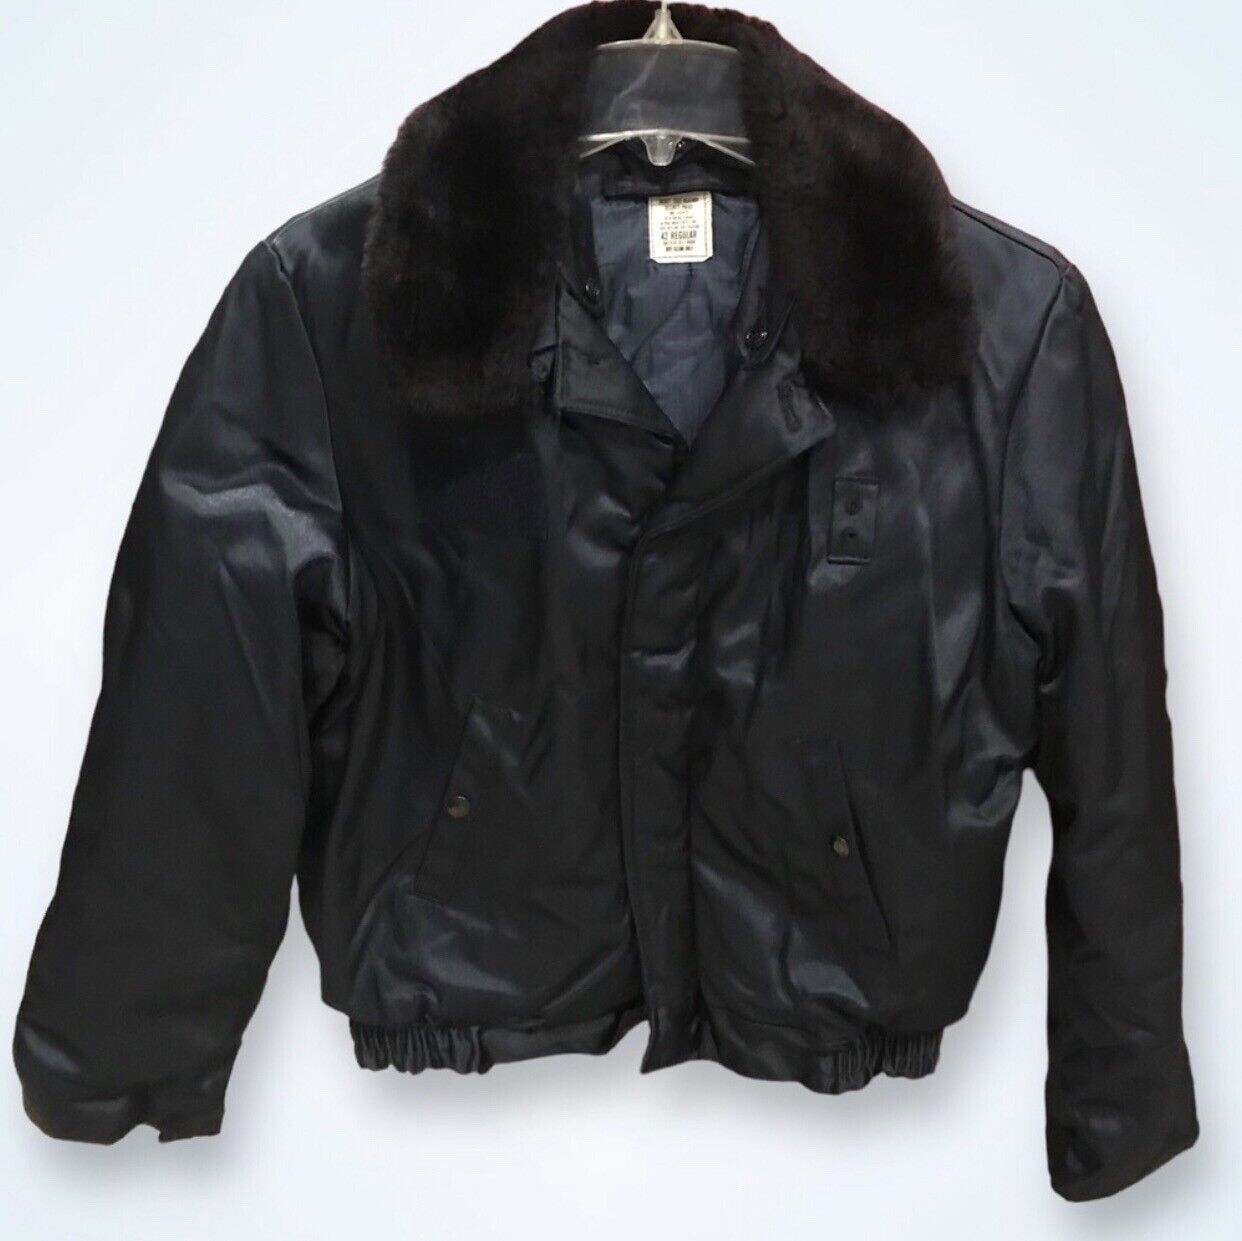 Vintage ALPHA INDUSTRIES Cold Weather Jacket (MIL-J-83472) 1970s Era - 42R